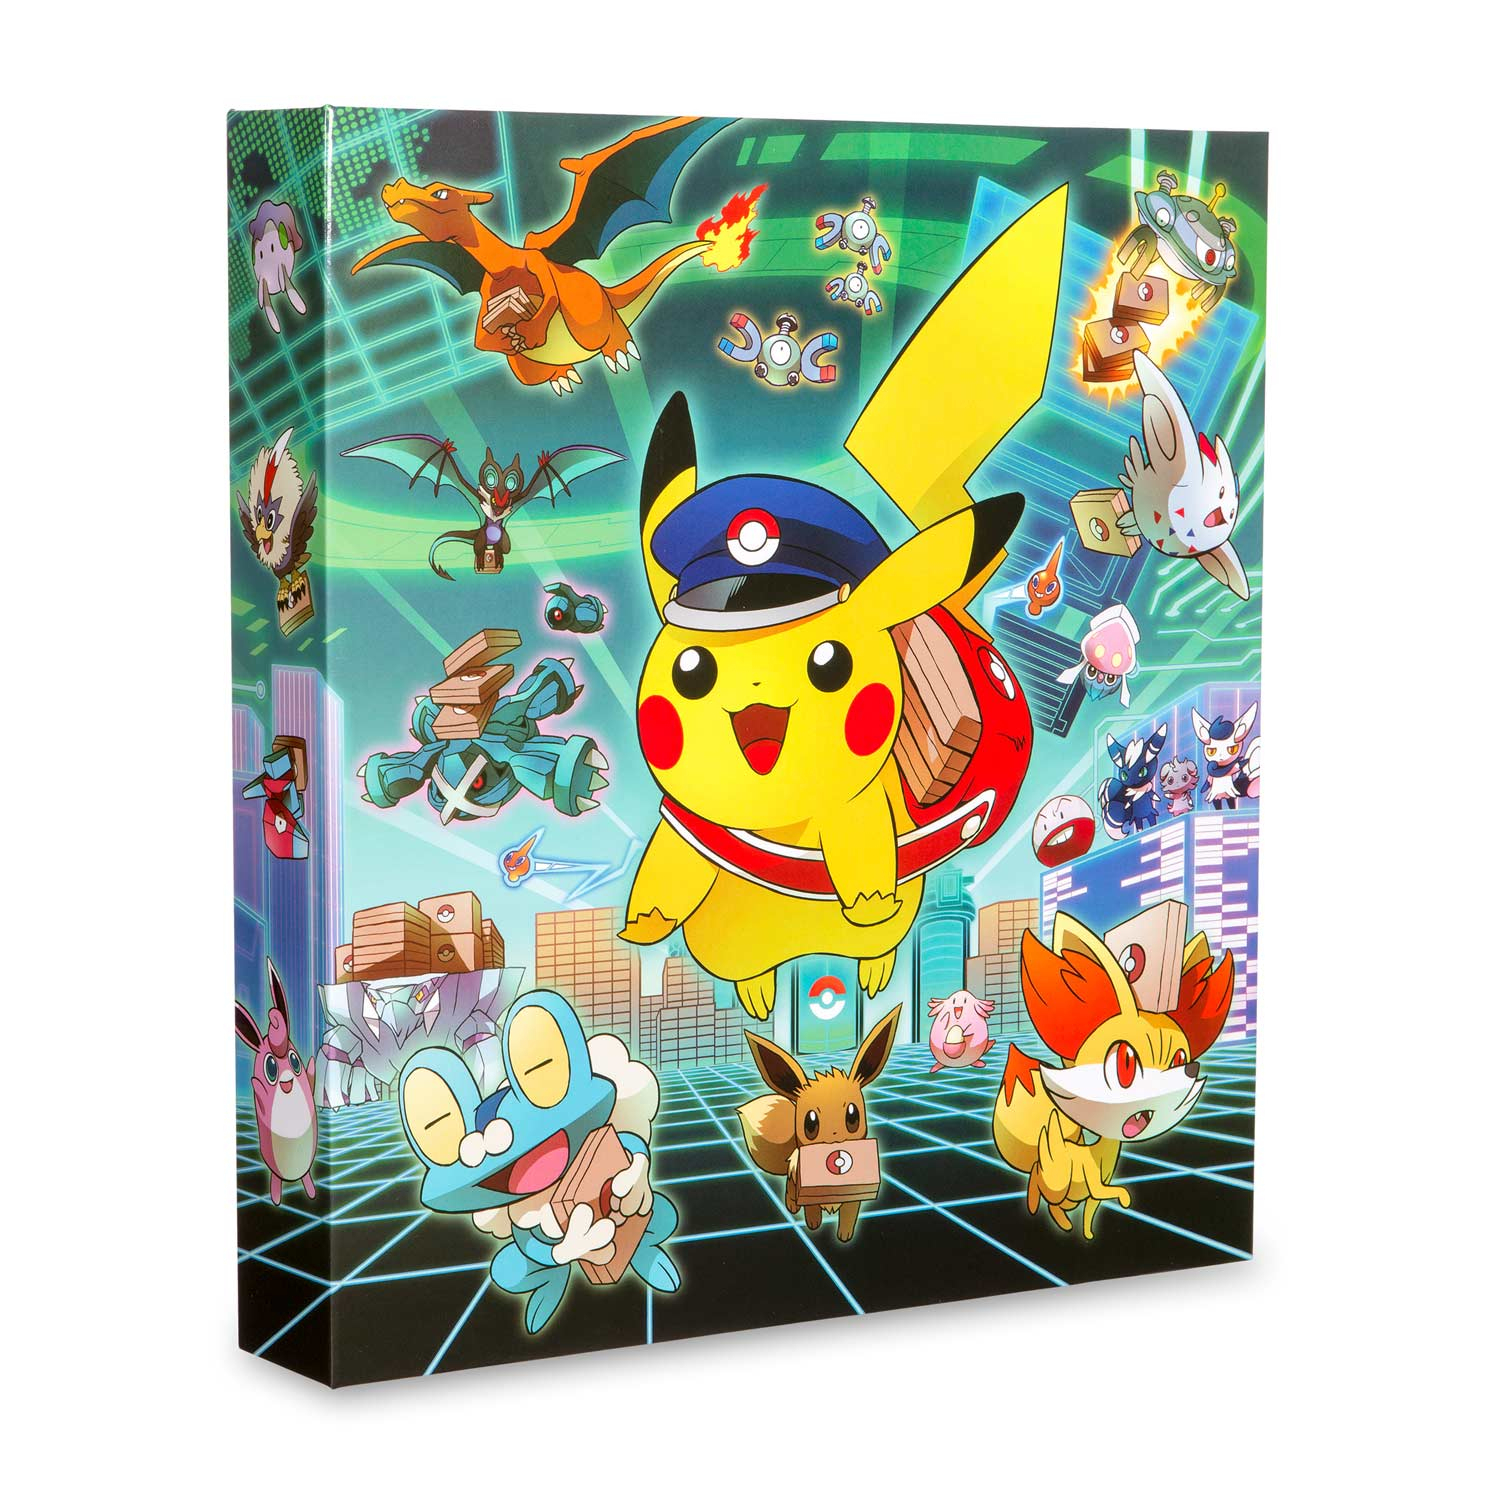 Pikachu Grand Opening 3-Ring Binder | Pokémon Center Original - Pokemon Binder Cover Printable Free